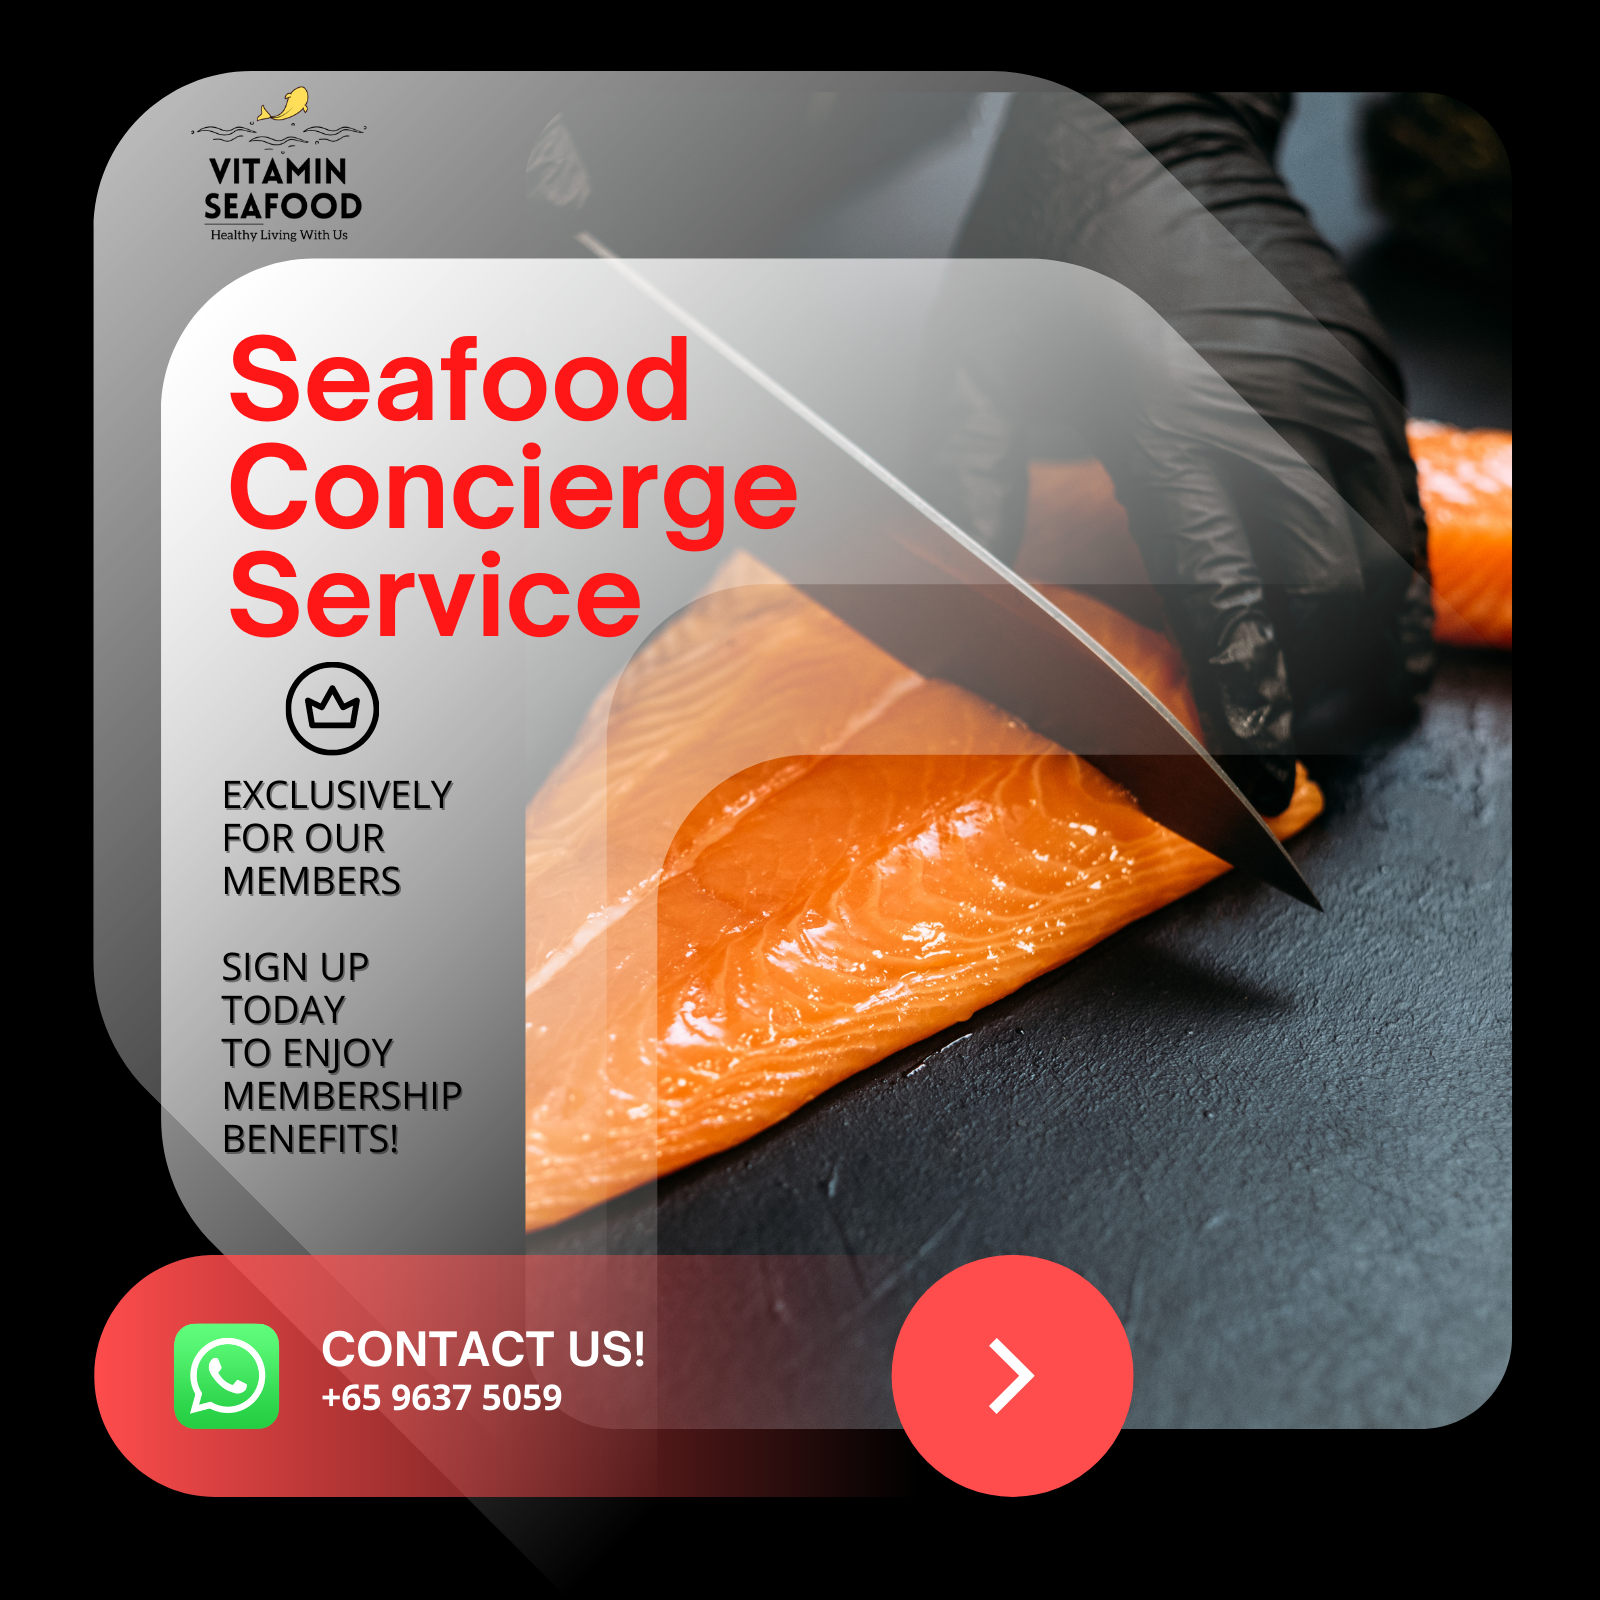 Seafood Concierge Service